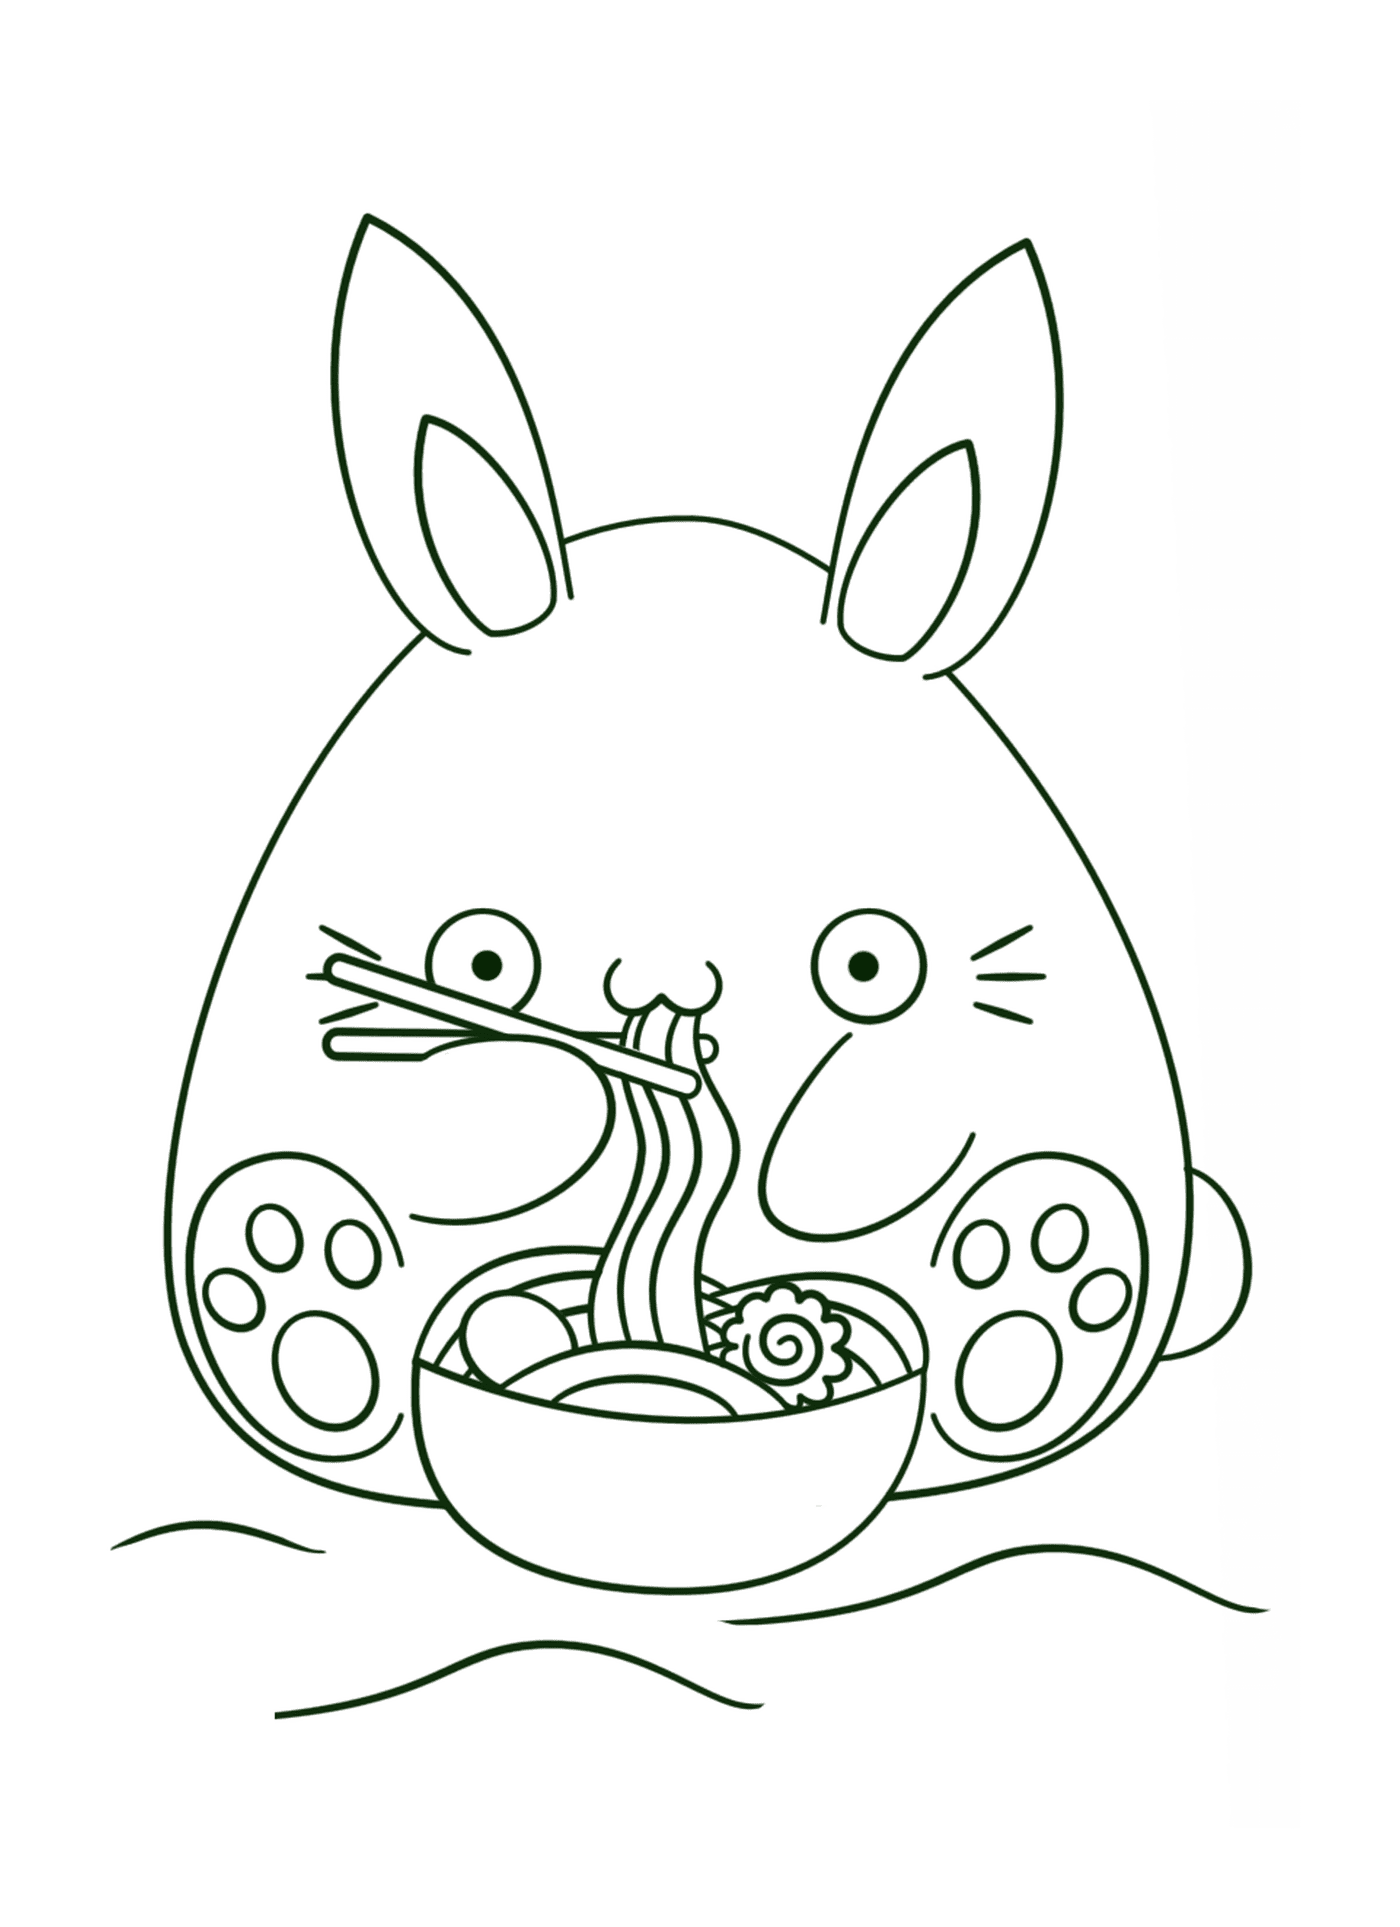  प्यारा खरगोश नूडल्स खाता है 